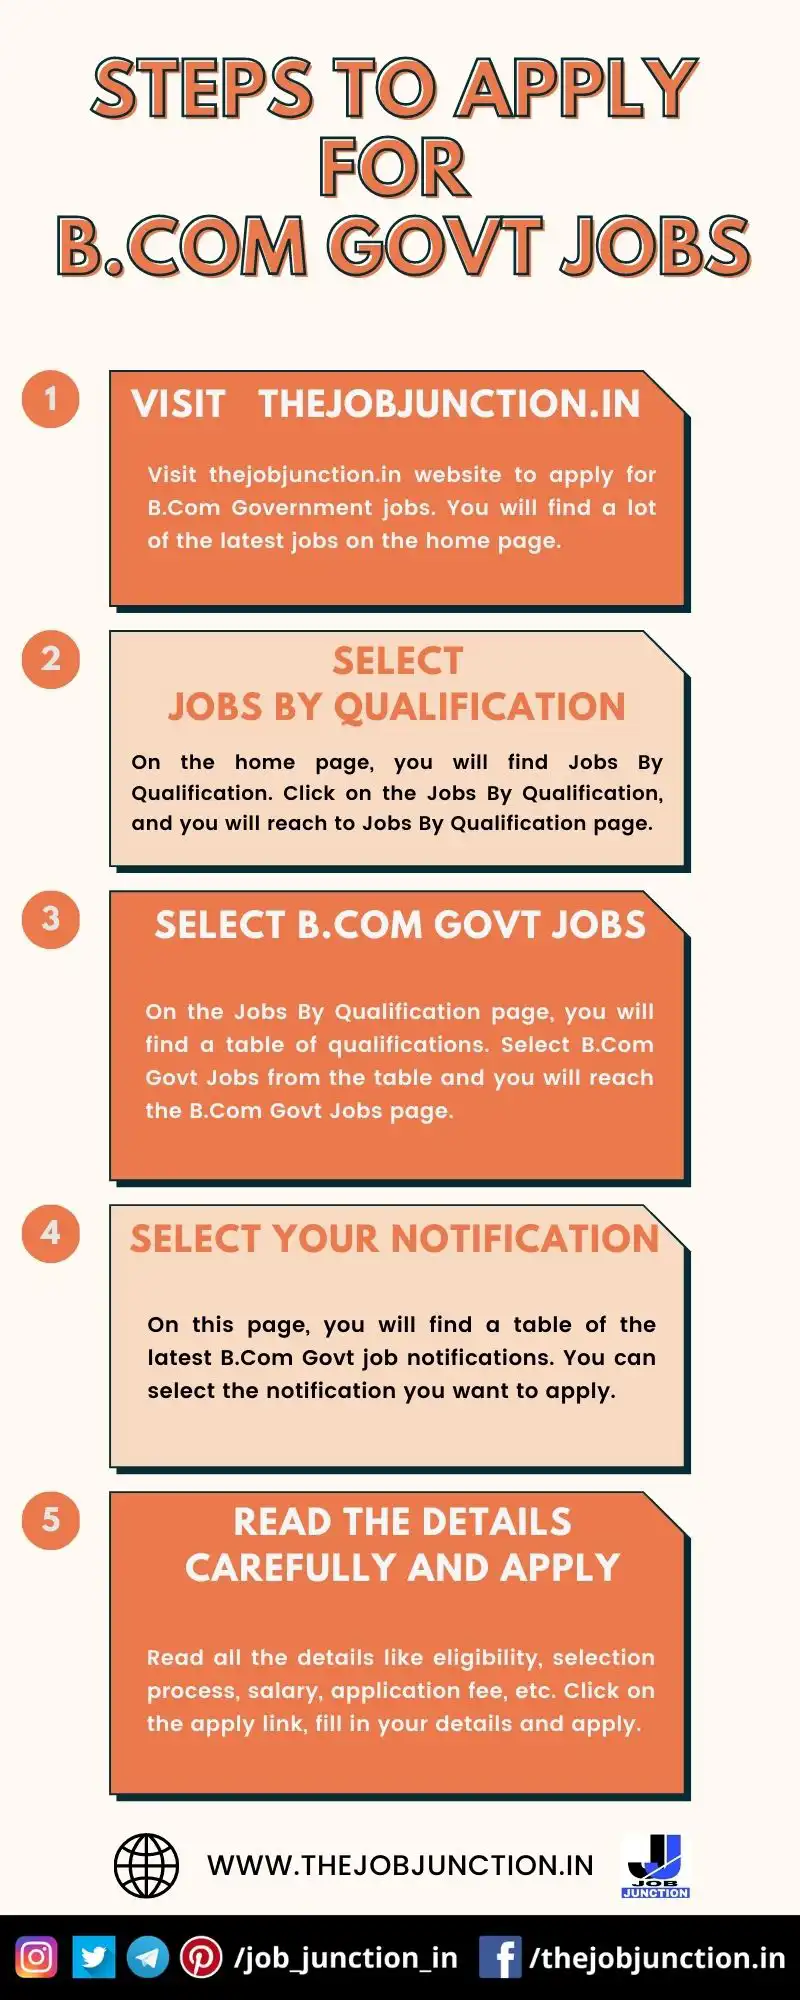 STEPS TO APPLY FOR B.COM GOVT JOBS